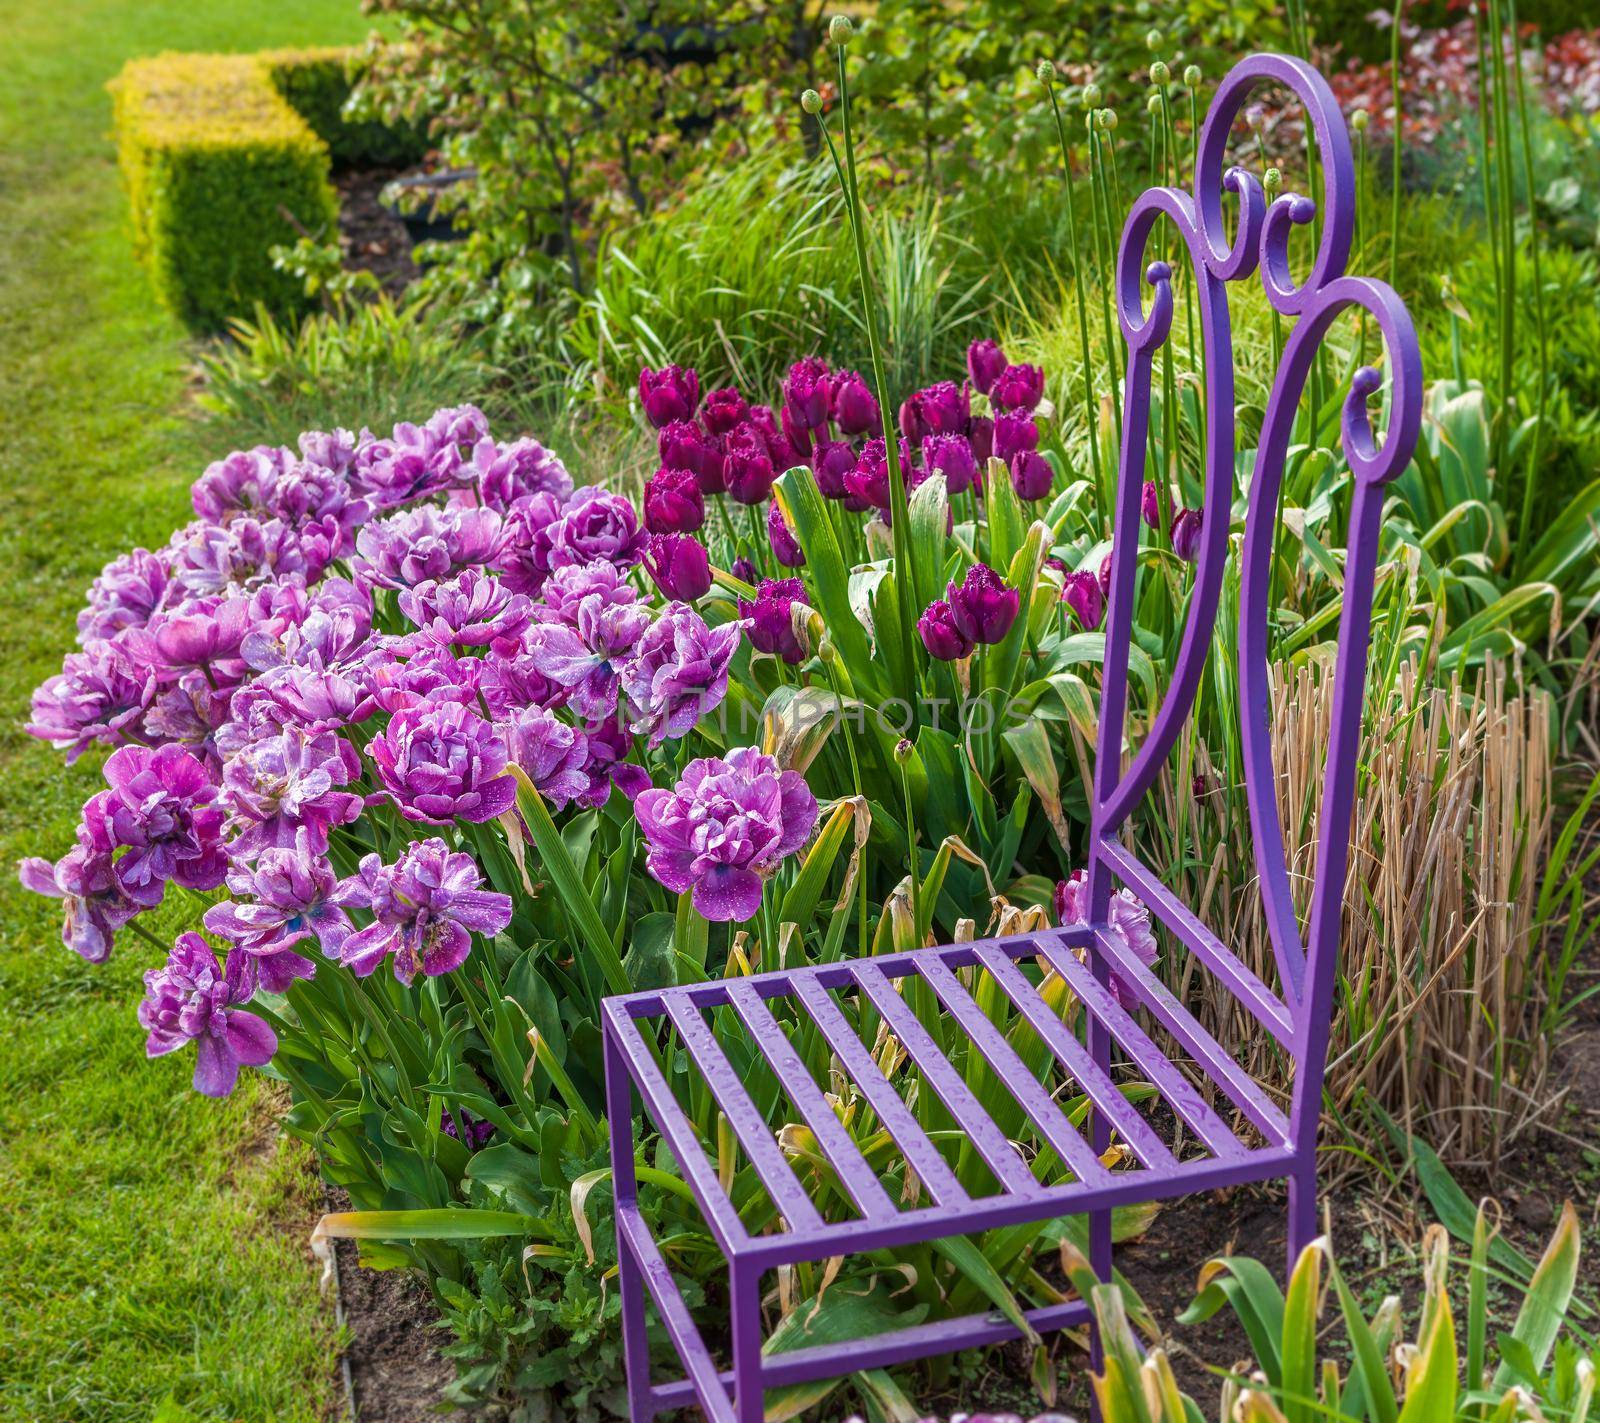 A colorful spring tulip garden with garden chair